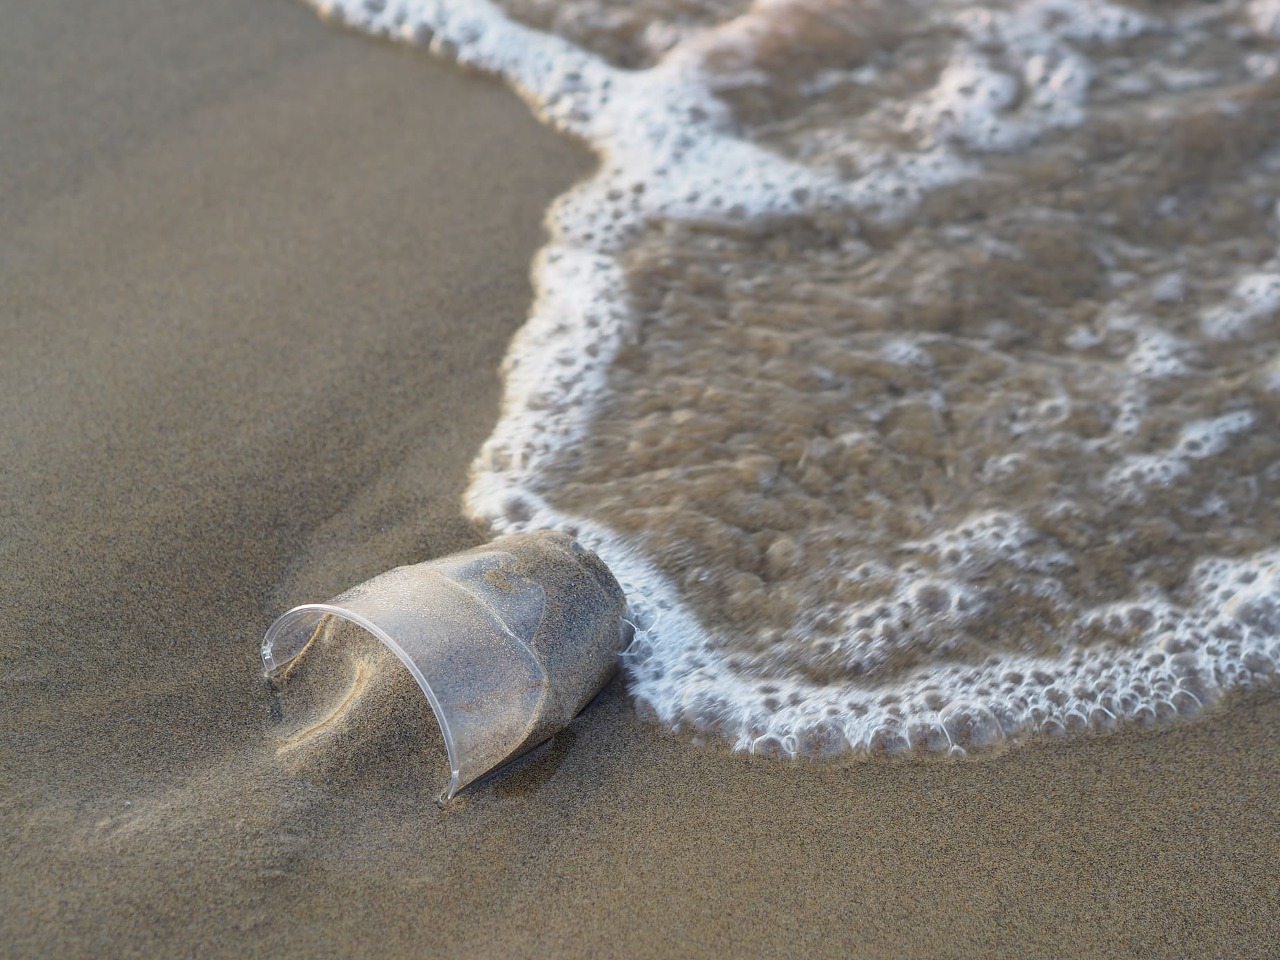 Gobelet en plastique sur le sable d'une plage.